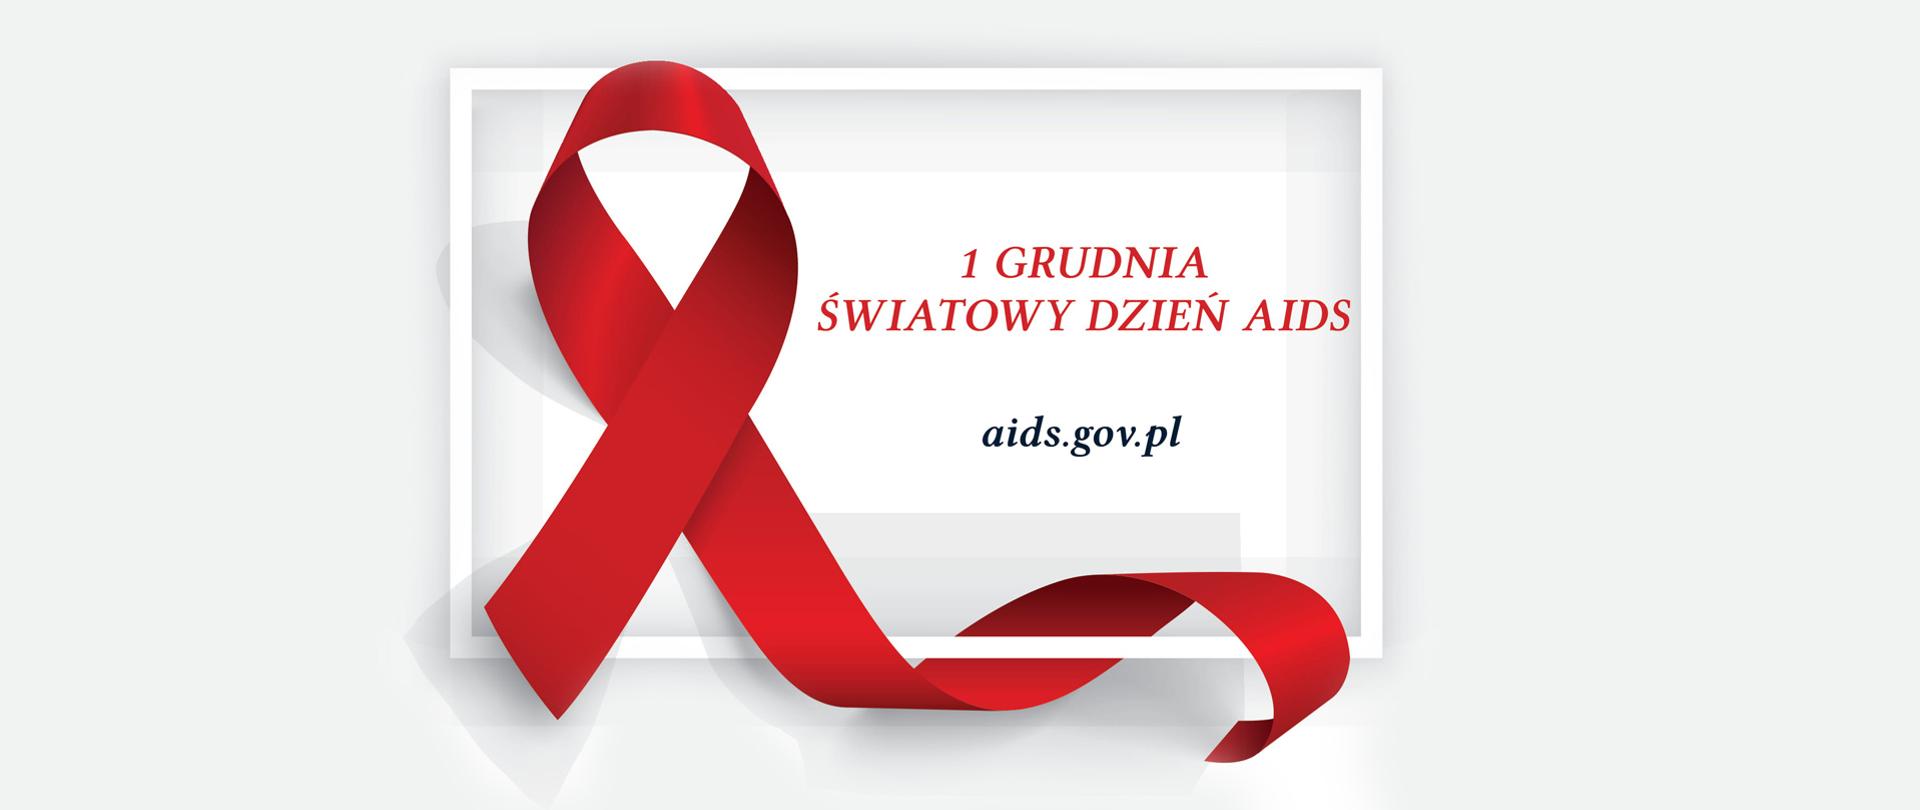 „Czerwona kokardka” - symbol solidarności z osobami żyjącymi z HIV i AIDS. Napis: 1 grudnia Światowy Dzień AIDS, aids.gov.pl